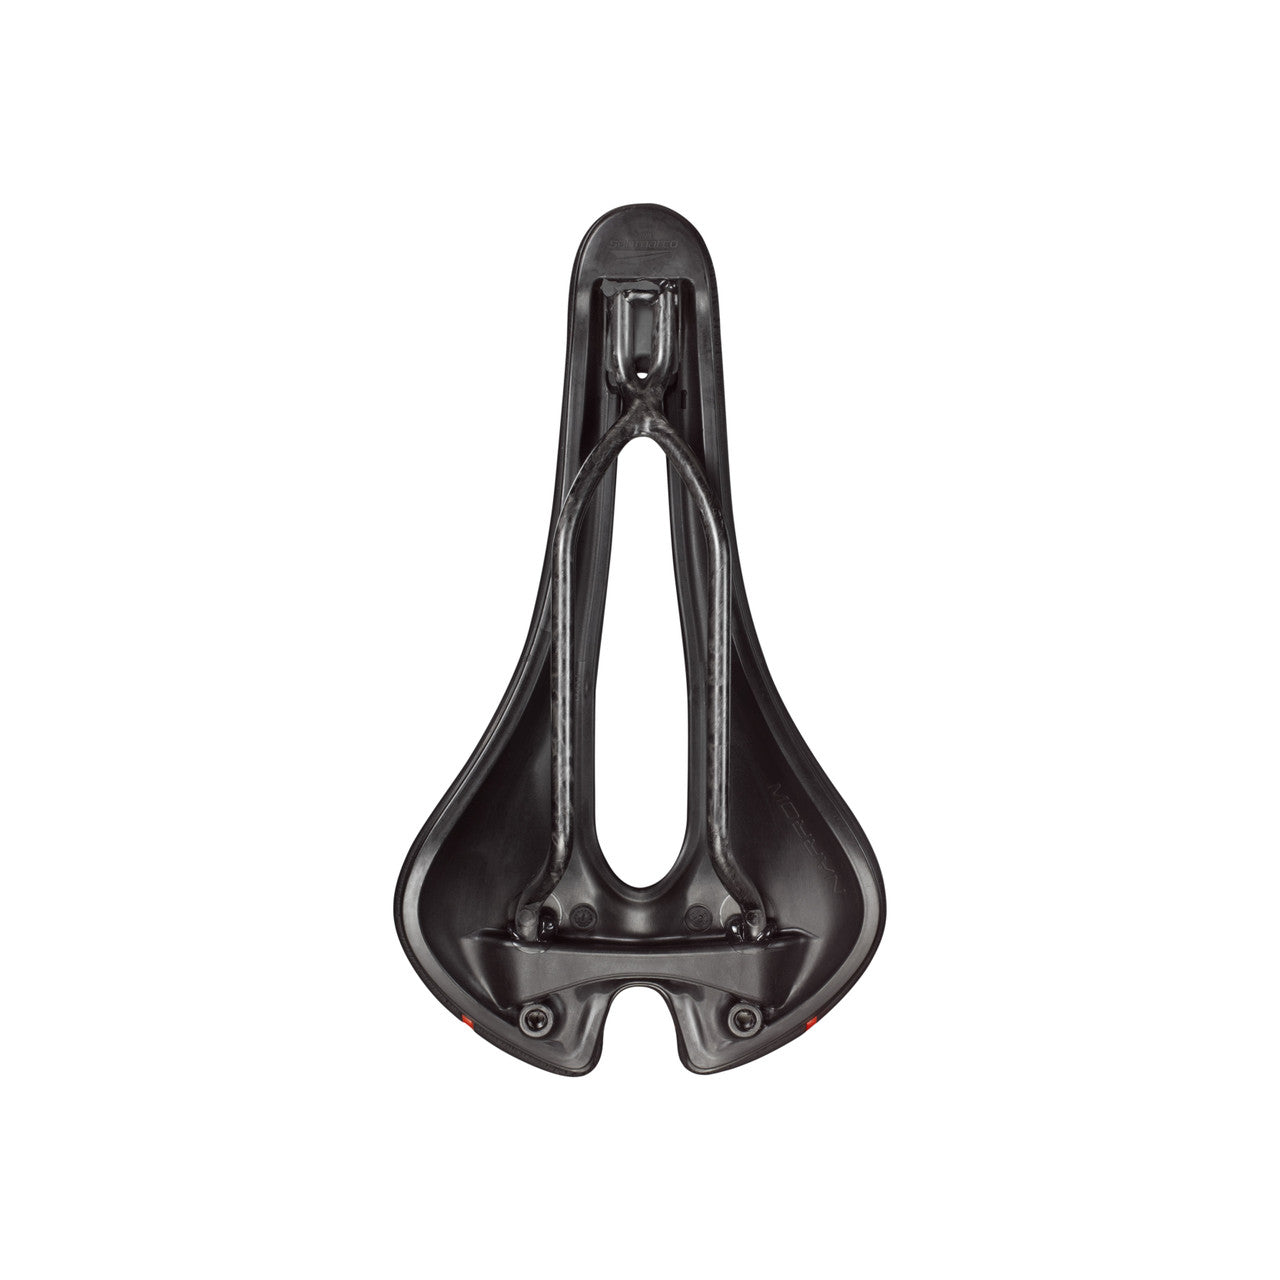 San Marco Aspide Short Open-Fit Carbon FX Wide L3 saddle